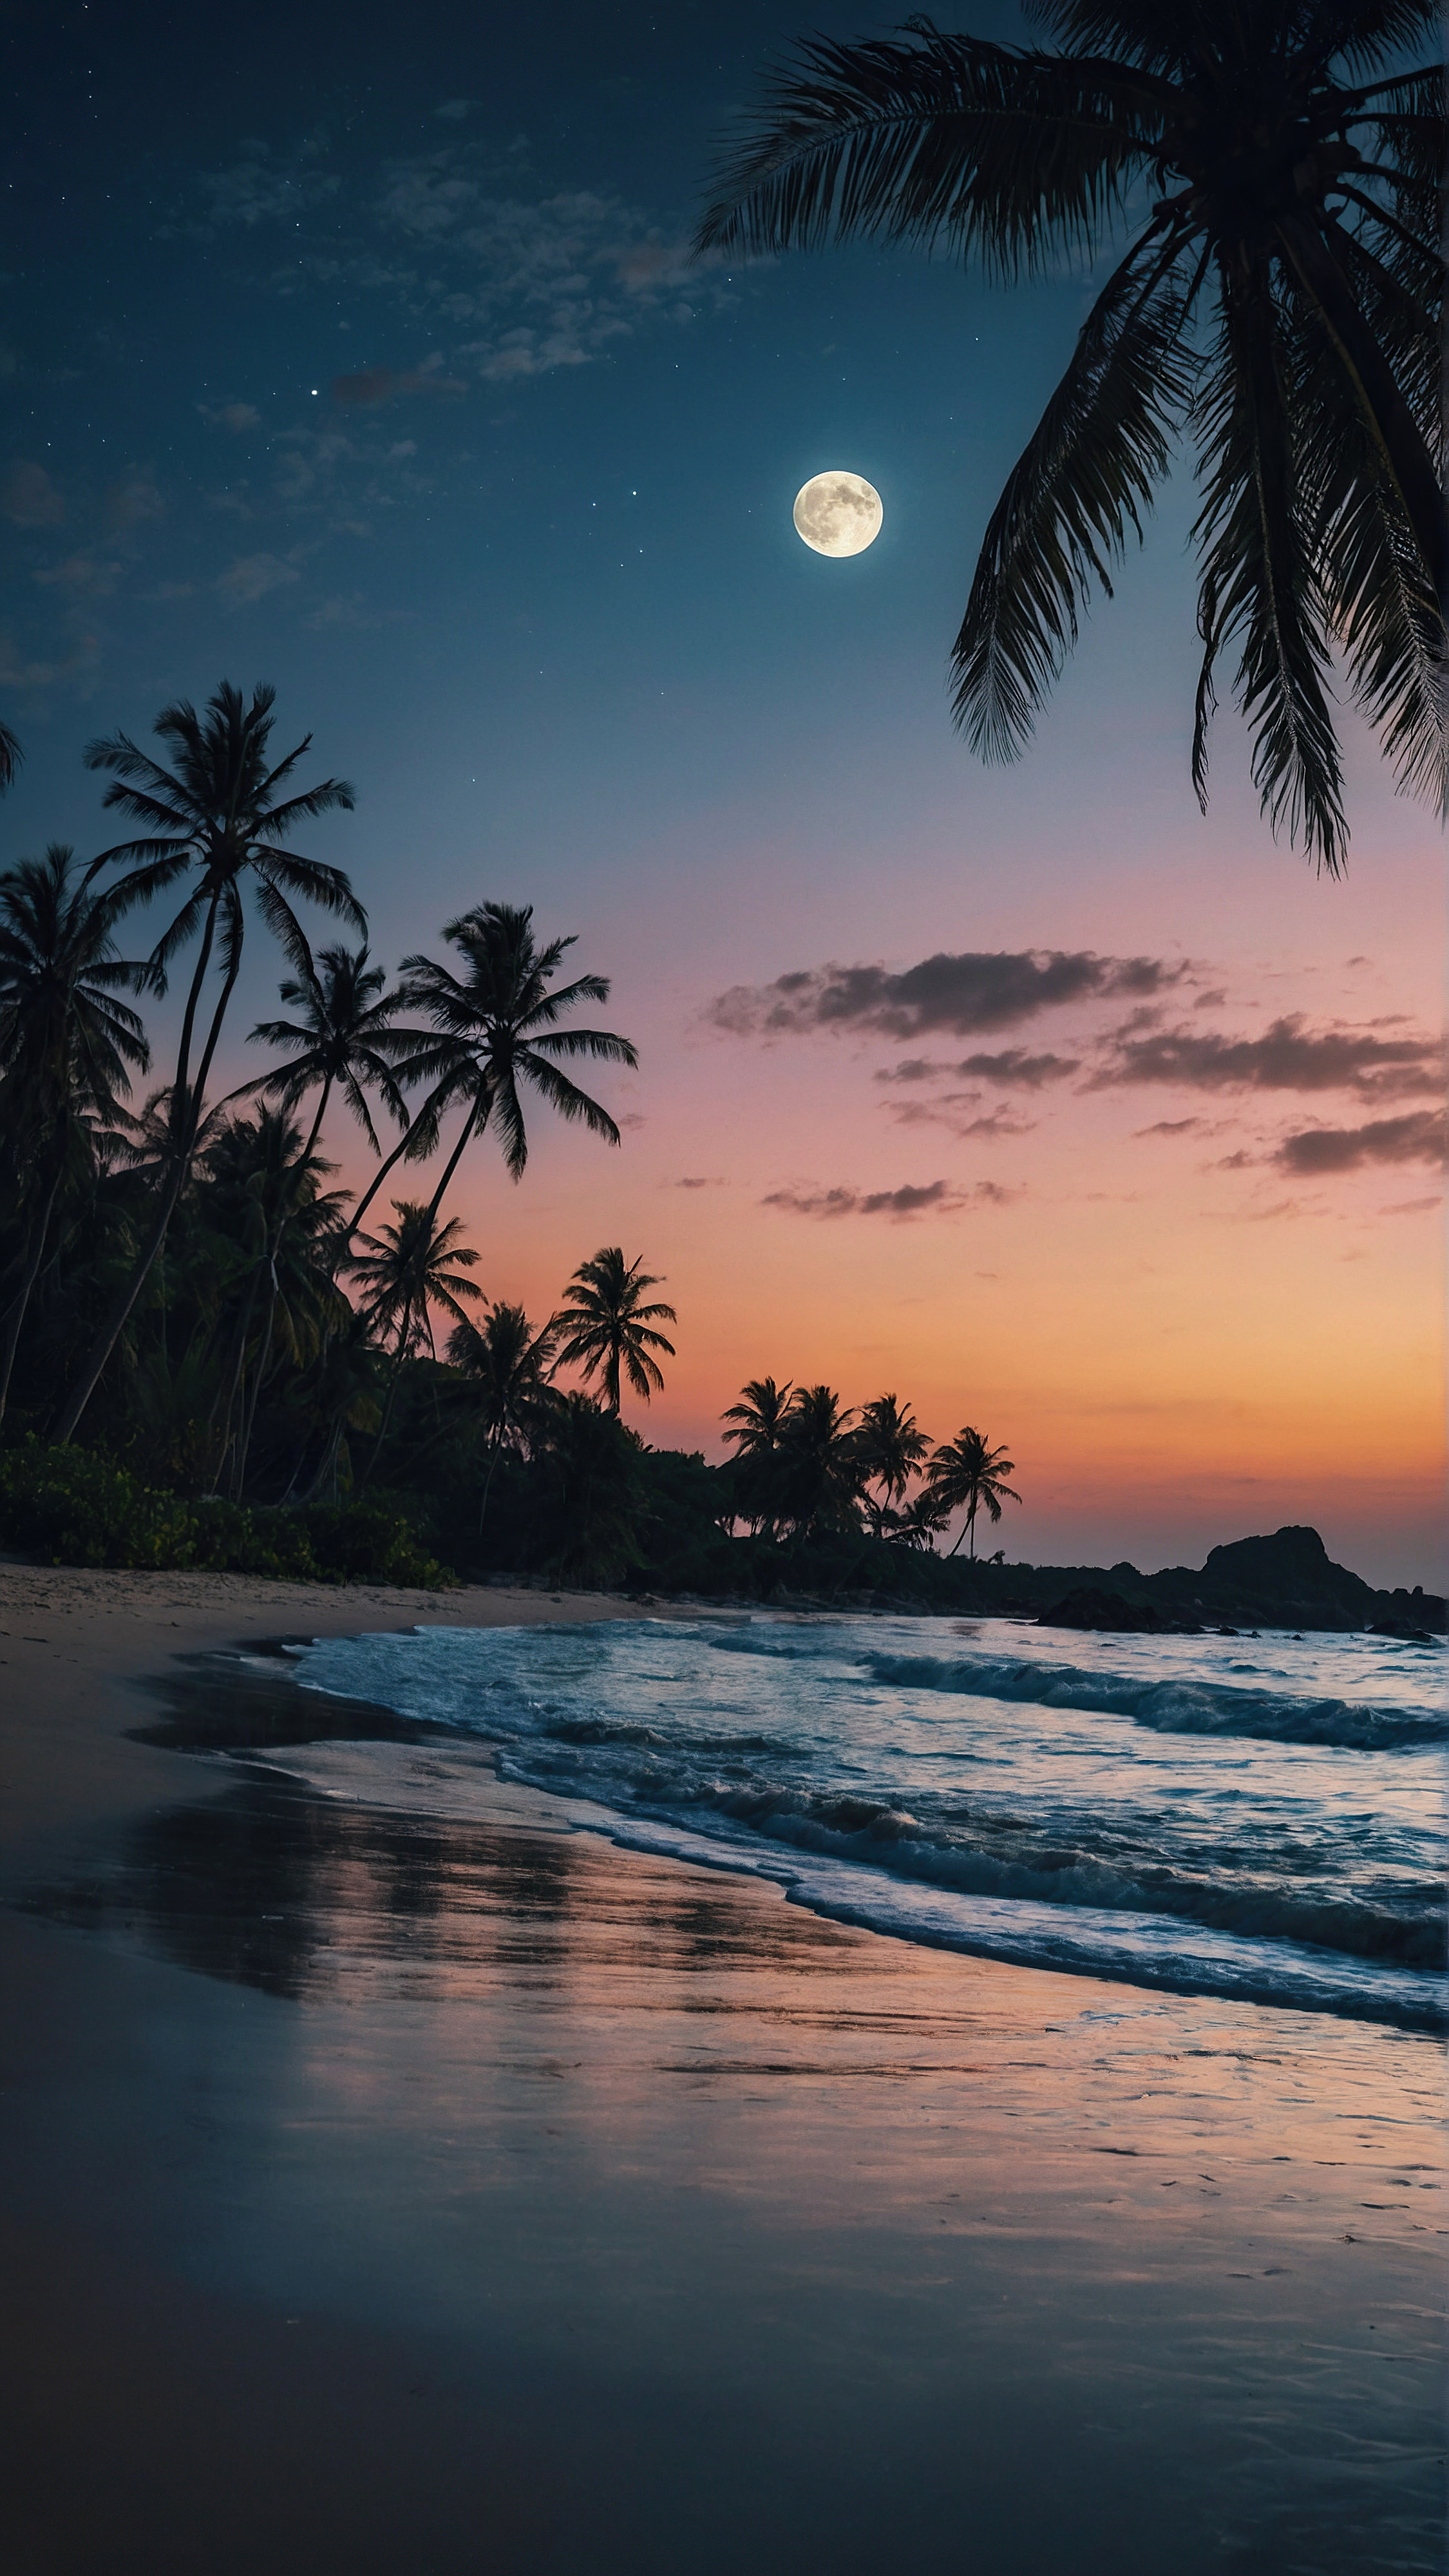 Découvrez le charme tropical de notre fond d'écran iPhone style en 4K, où une grande lune illumine une scène de plage envoûtante au crépuscule, se reflétant sur les vagues qui clapotent doucement et mettant en valeur les silhouettes des palmiers dans ce paysage serein.